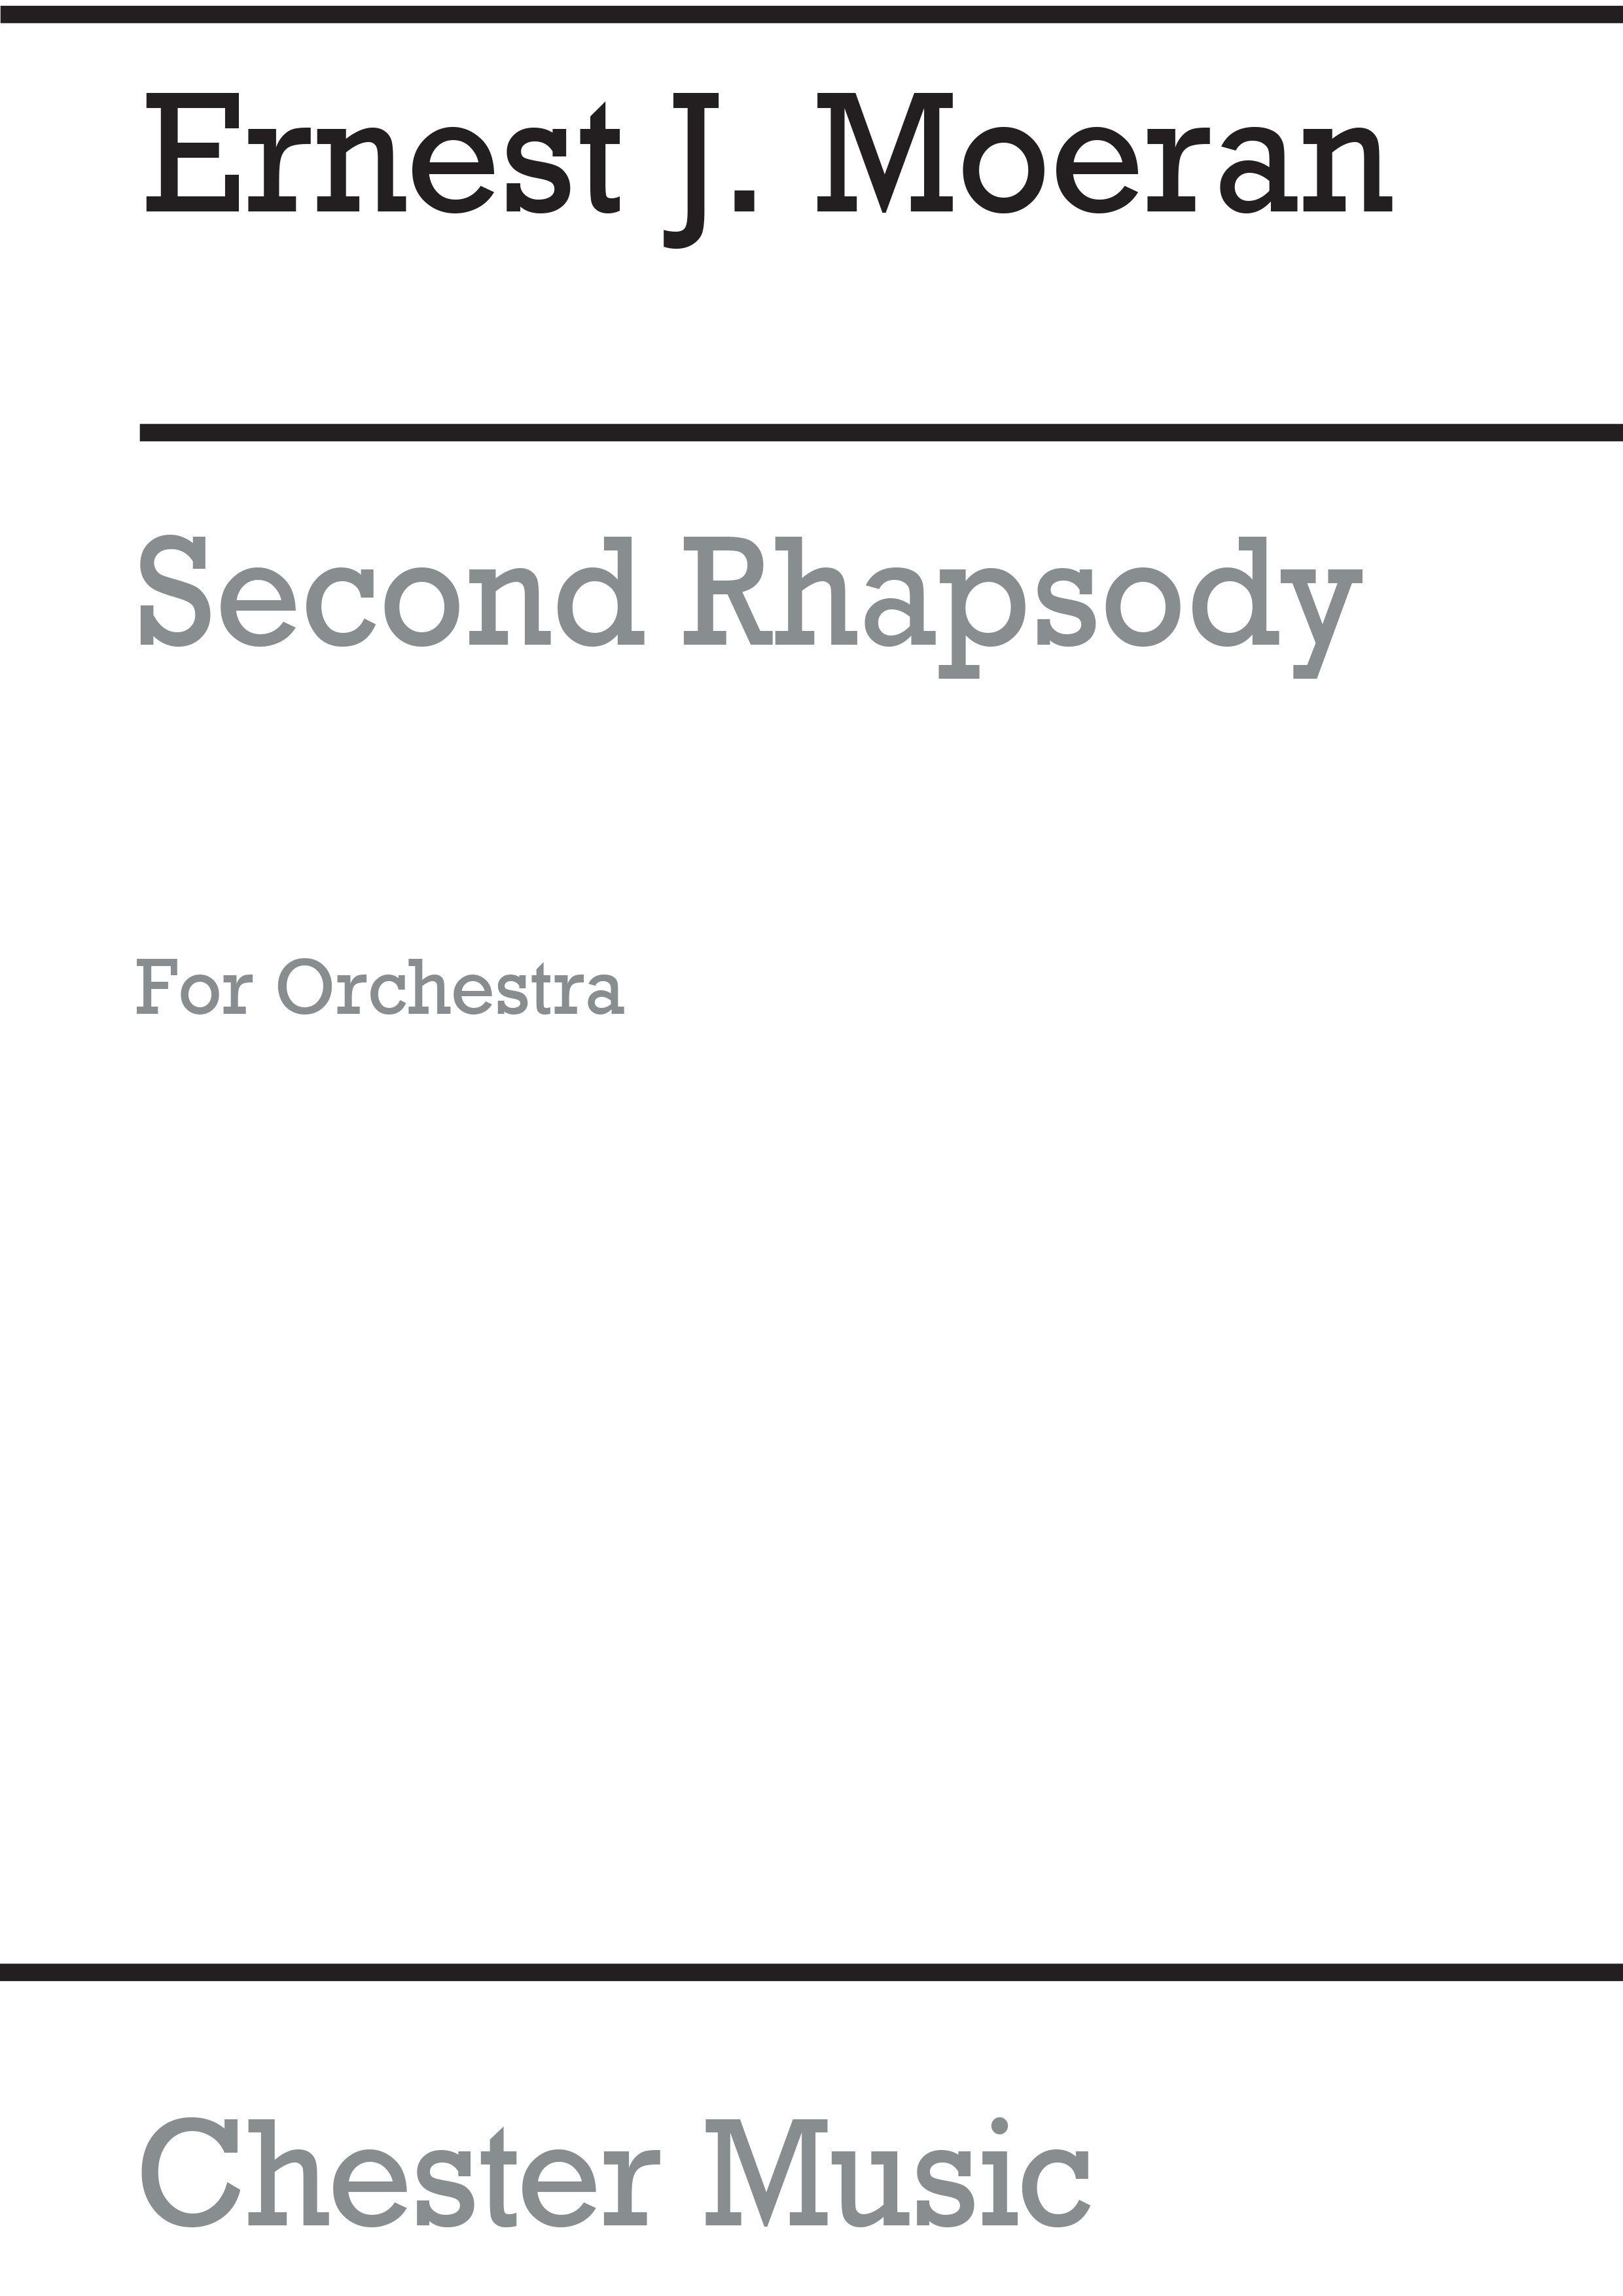 E.J. Moeran: Second Rhapsody For Orchestra: Orchestra: Score